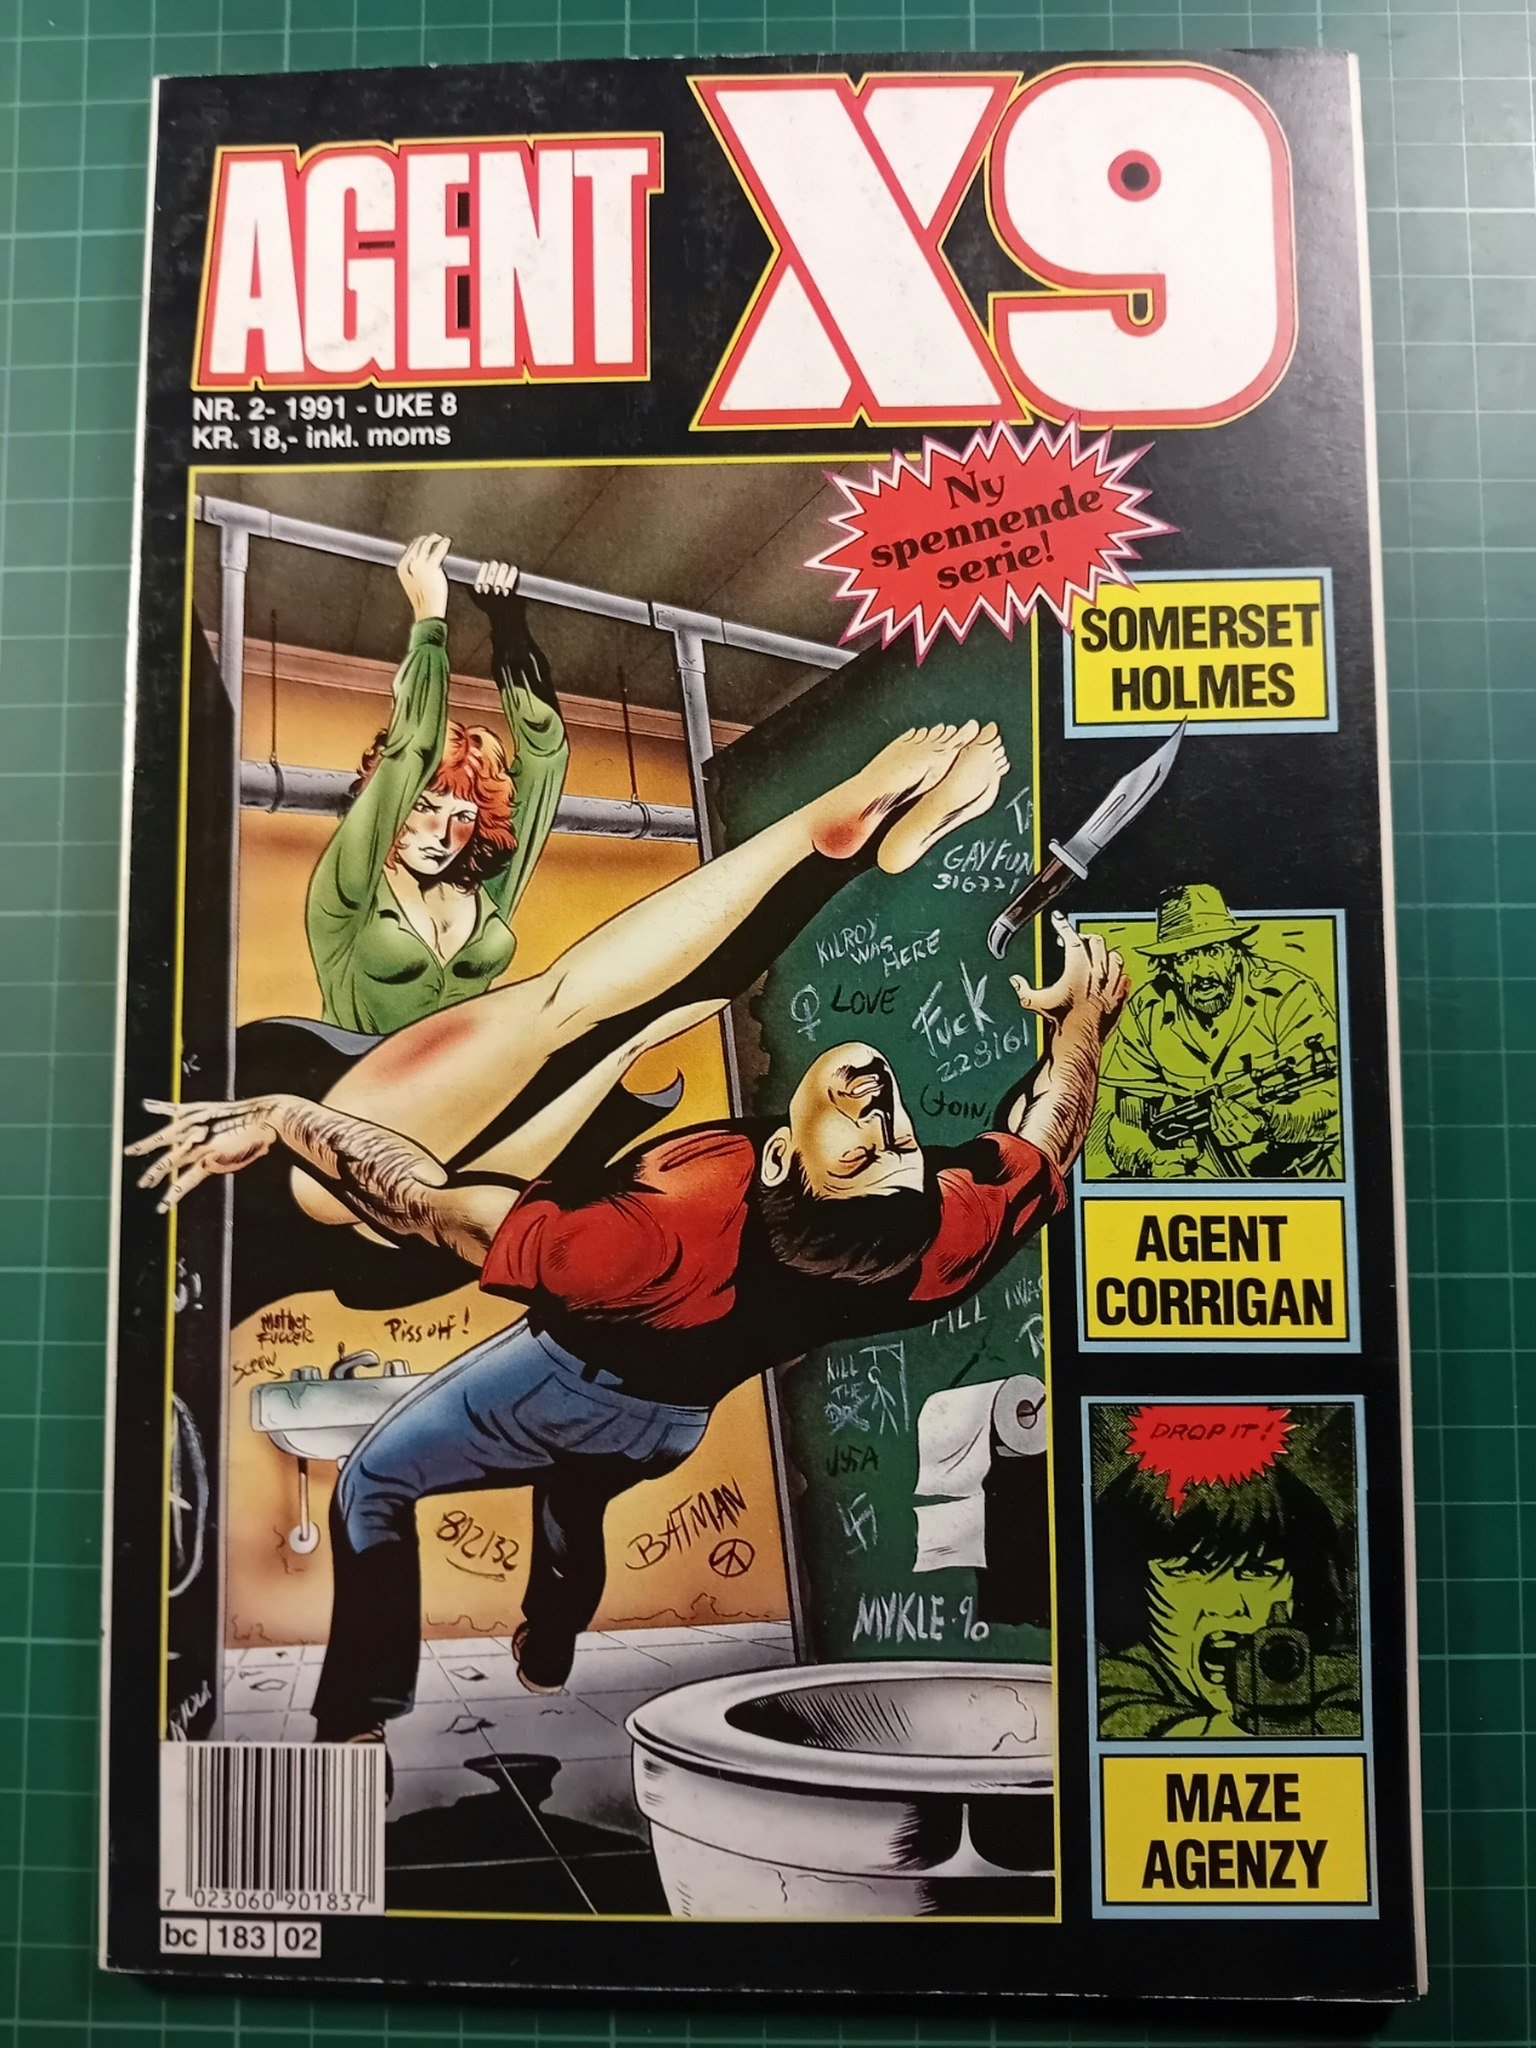 Agent X9 1991 - 02